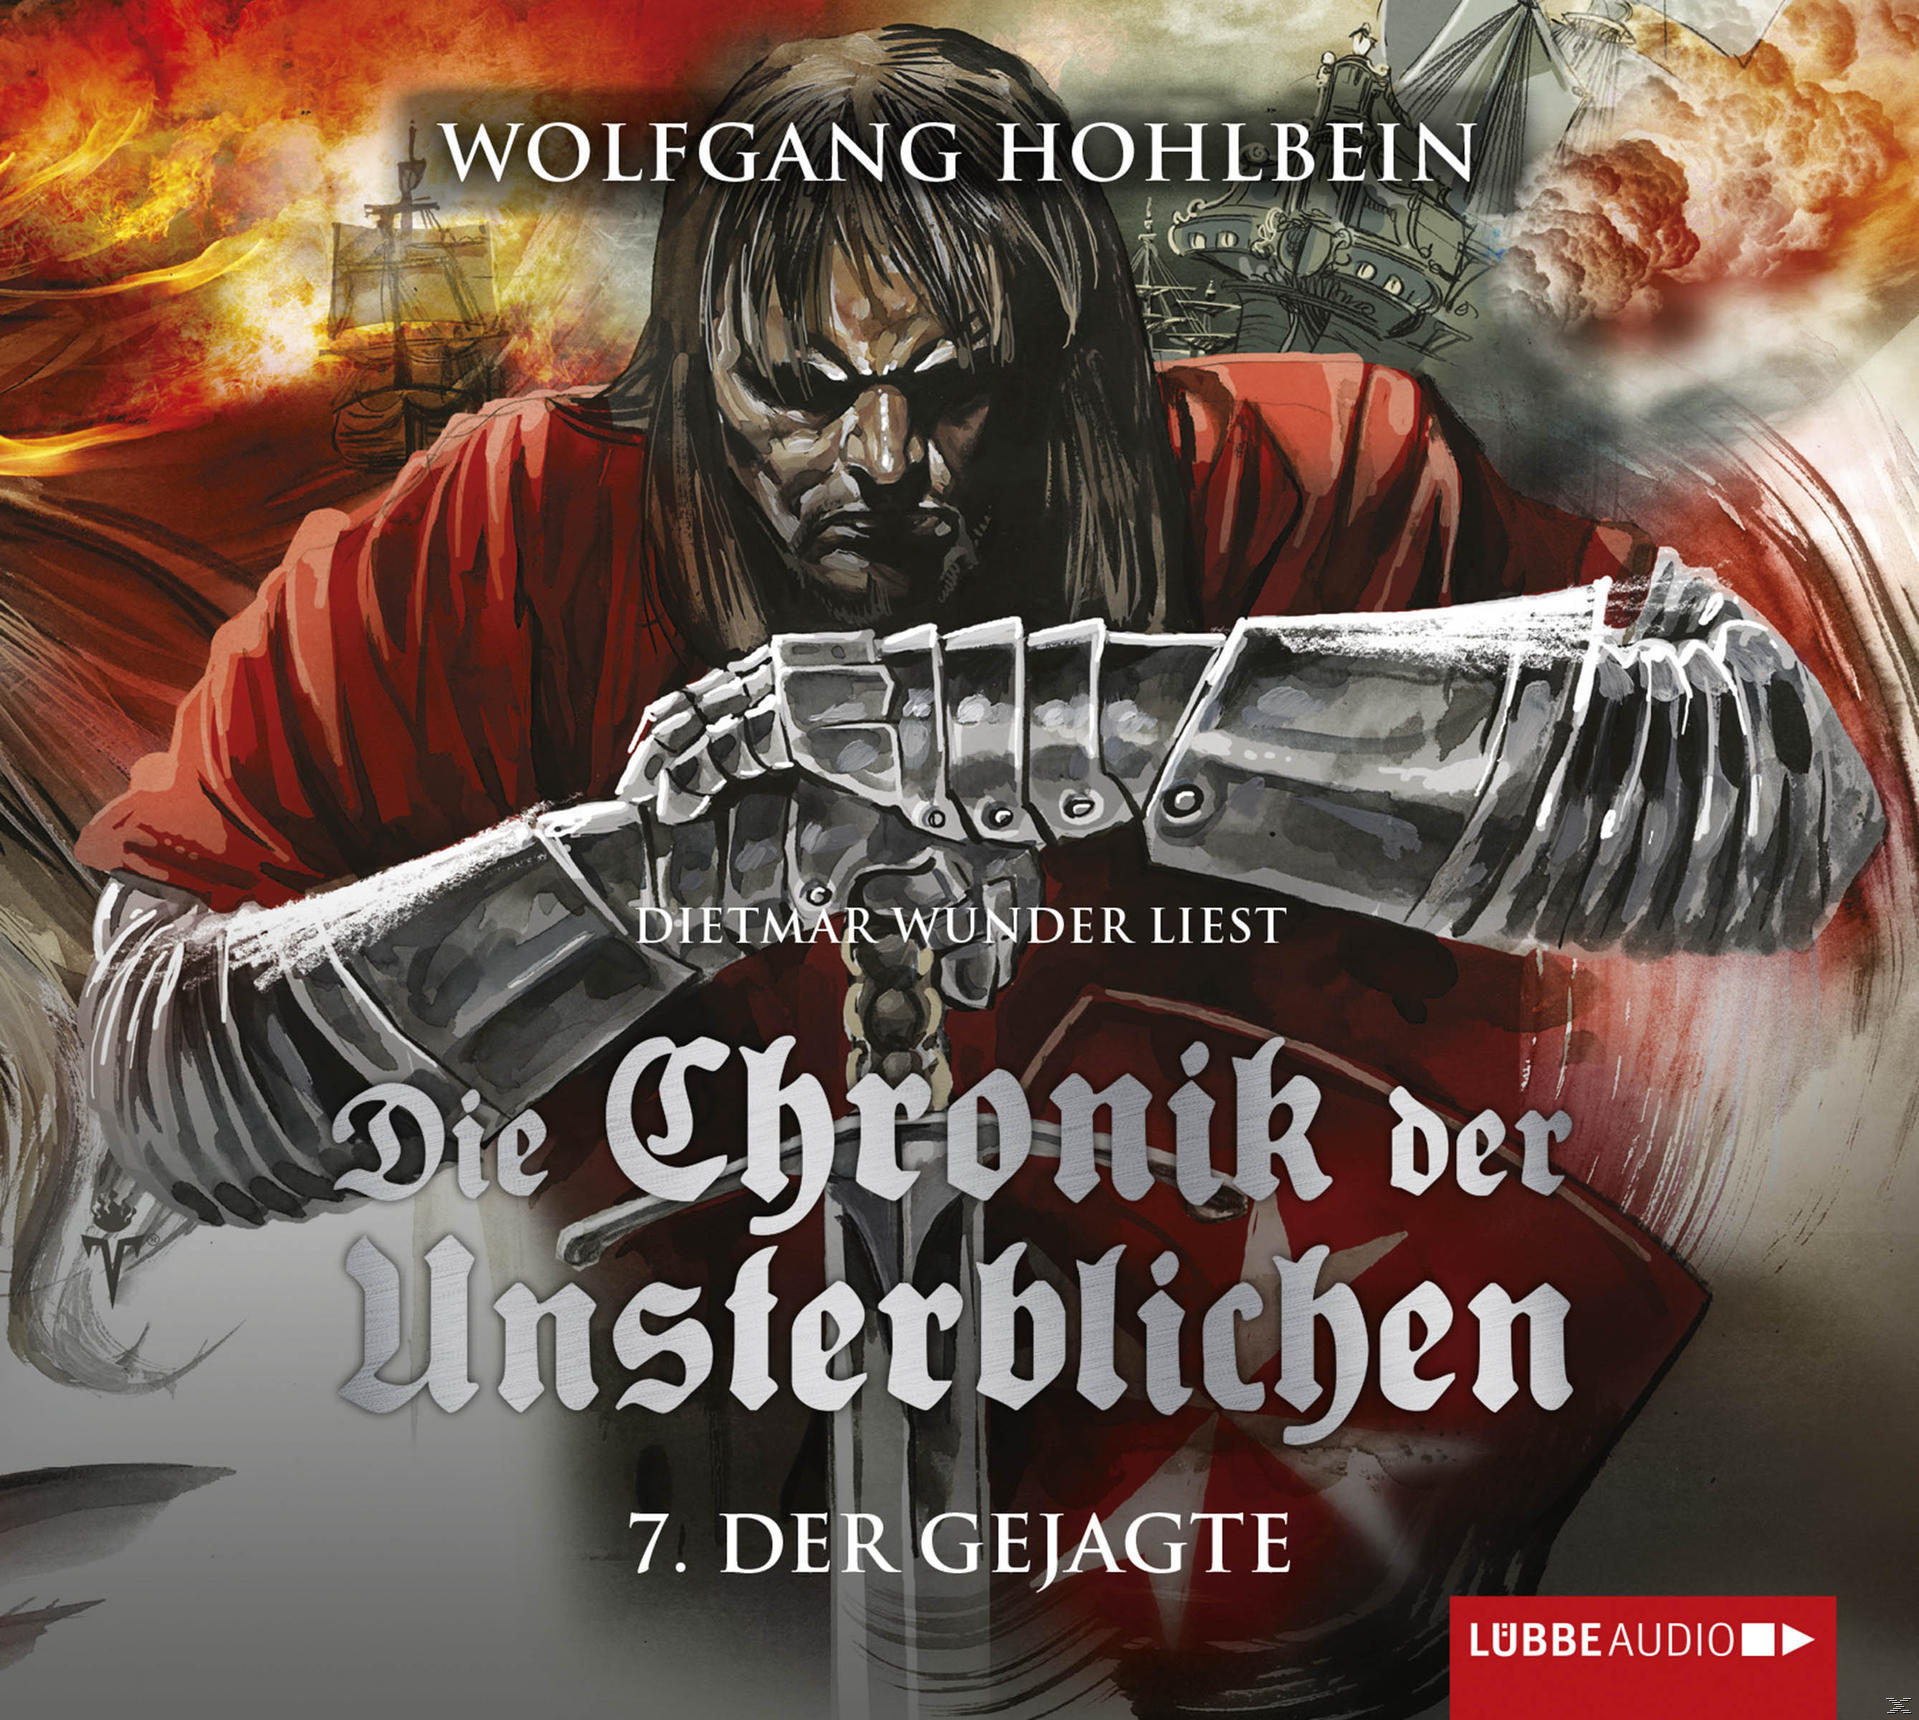 Hohlbein Wolfgang - Die Chronik Unsterblichen Teil Der (CD) - - Gejagte 7: der